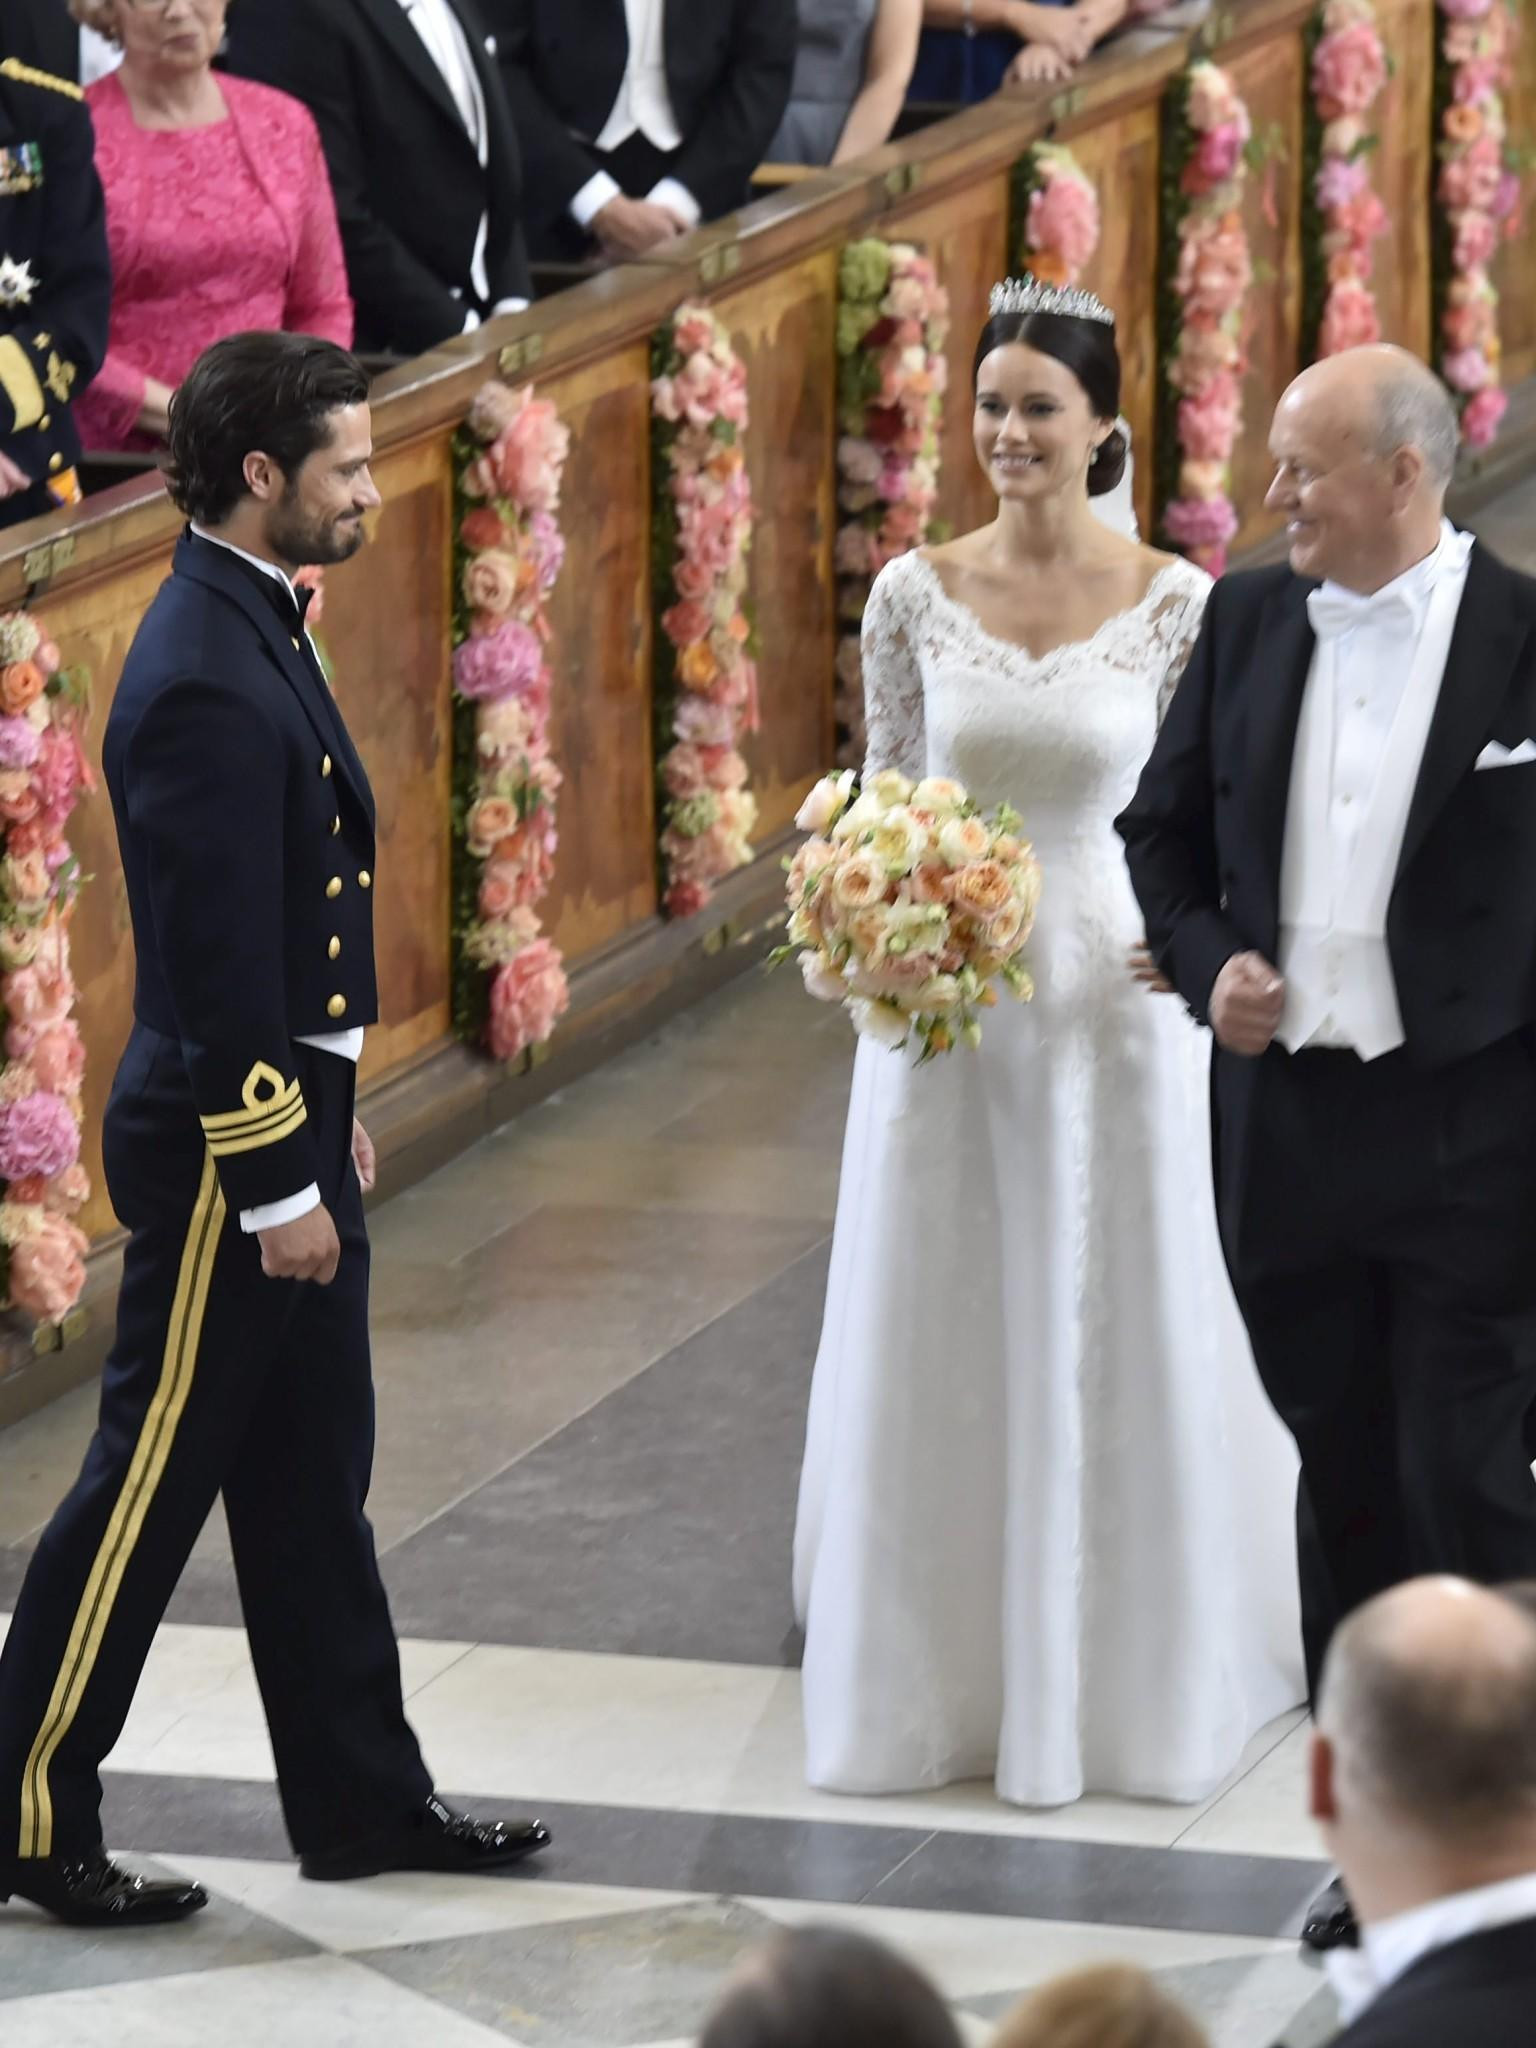 Hochzeit Prinz Schweden
 Prinz Carl Philip und Sofia Hellqvist Die schönsten